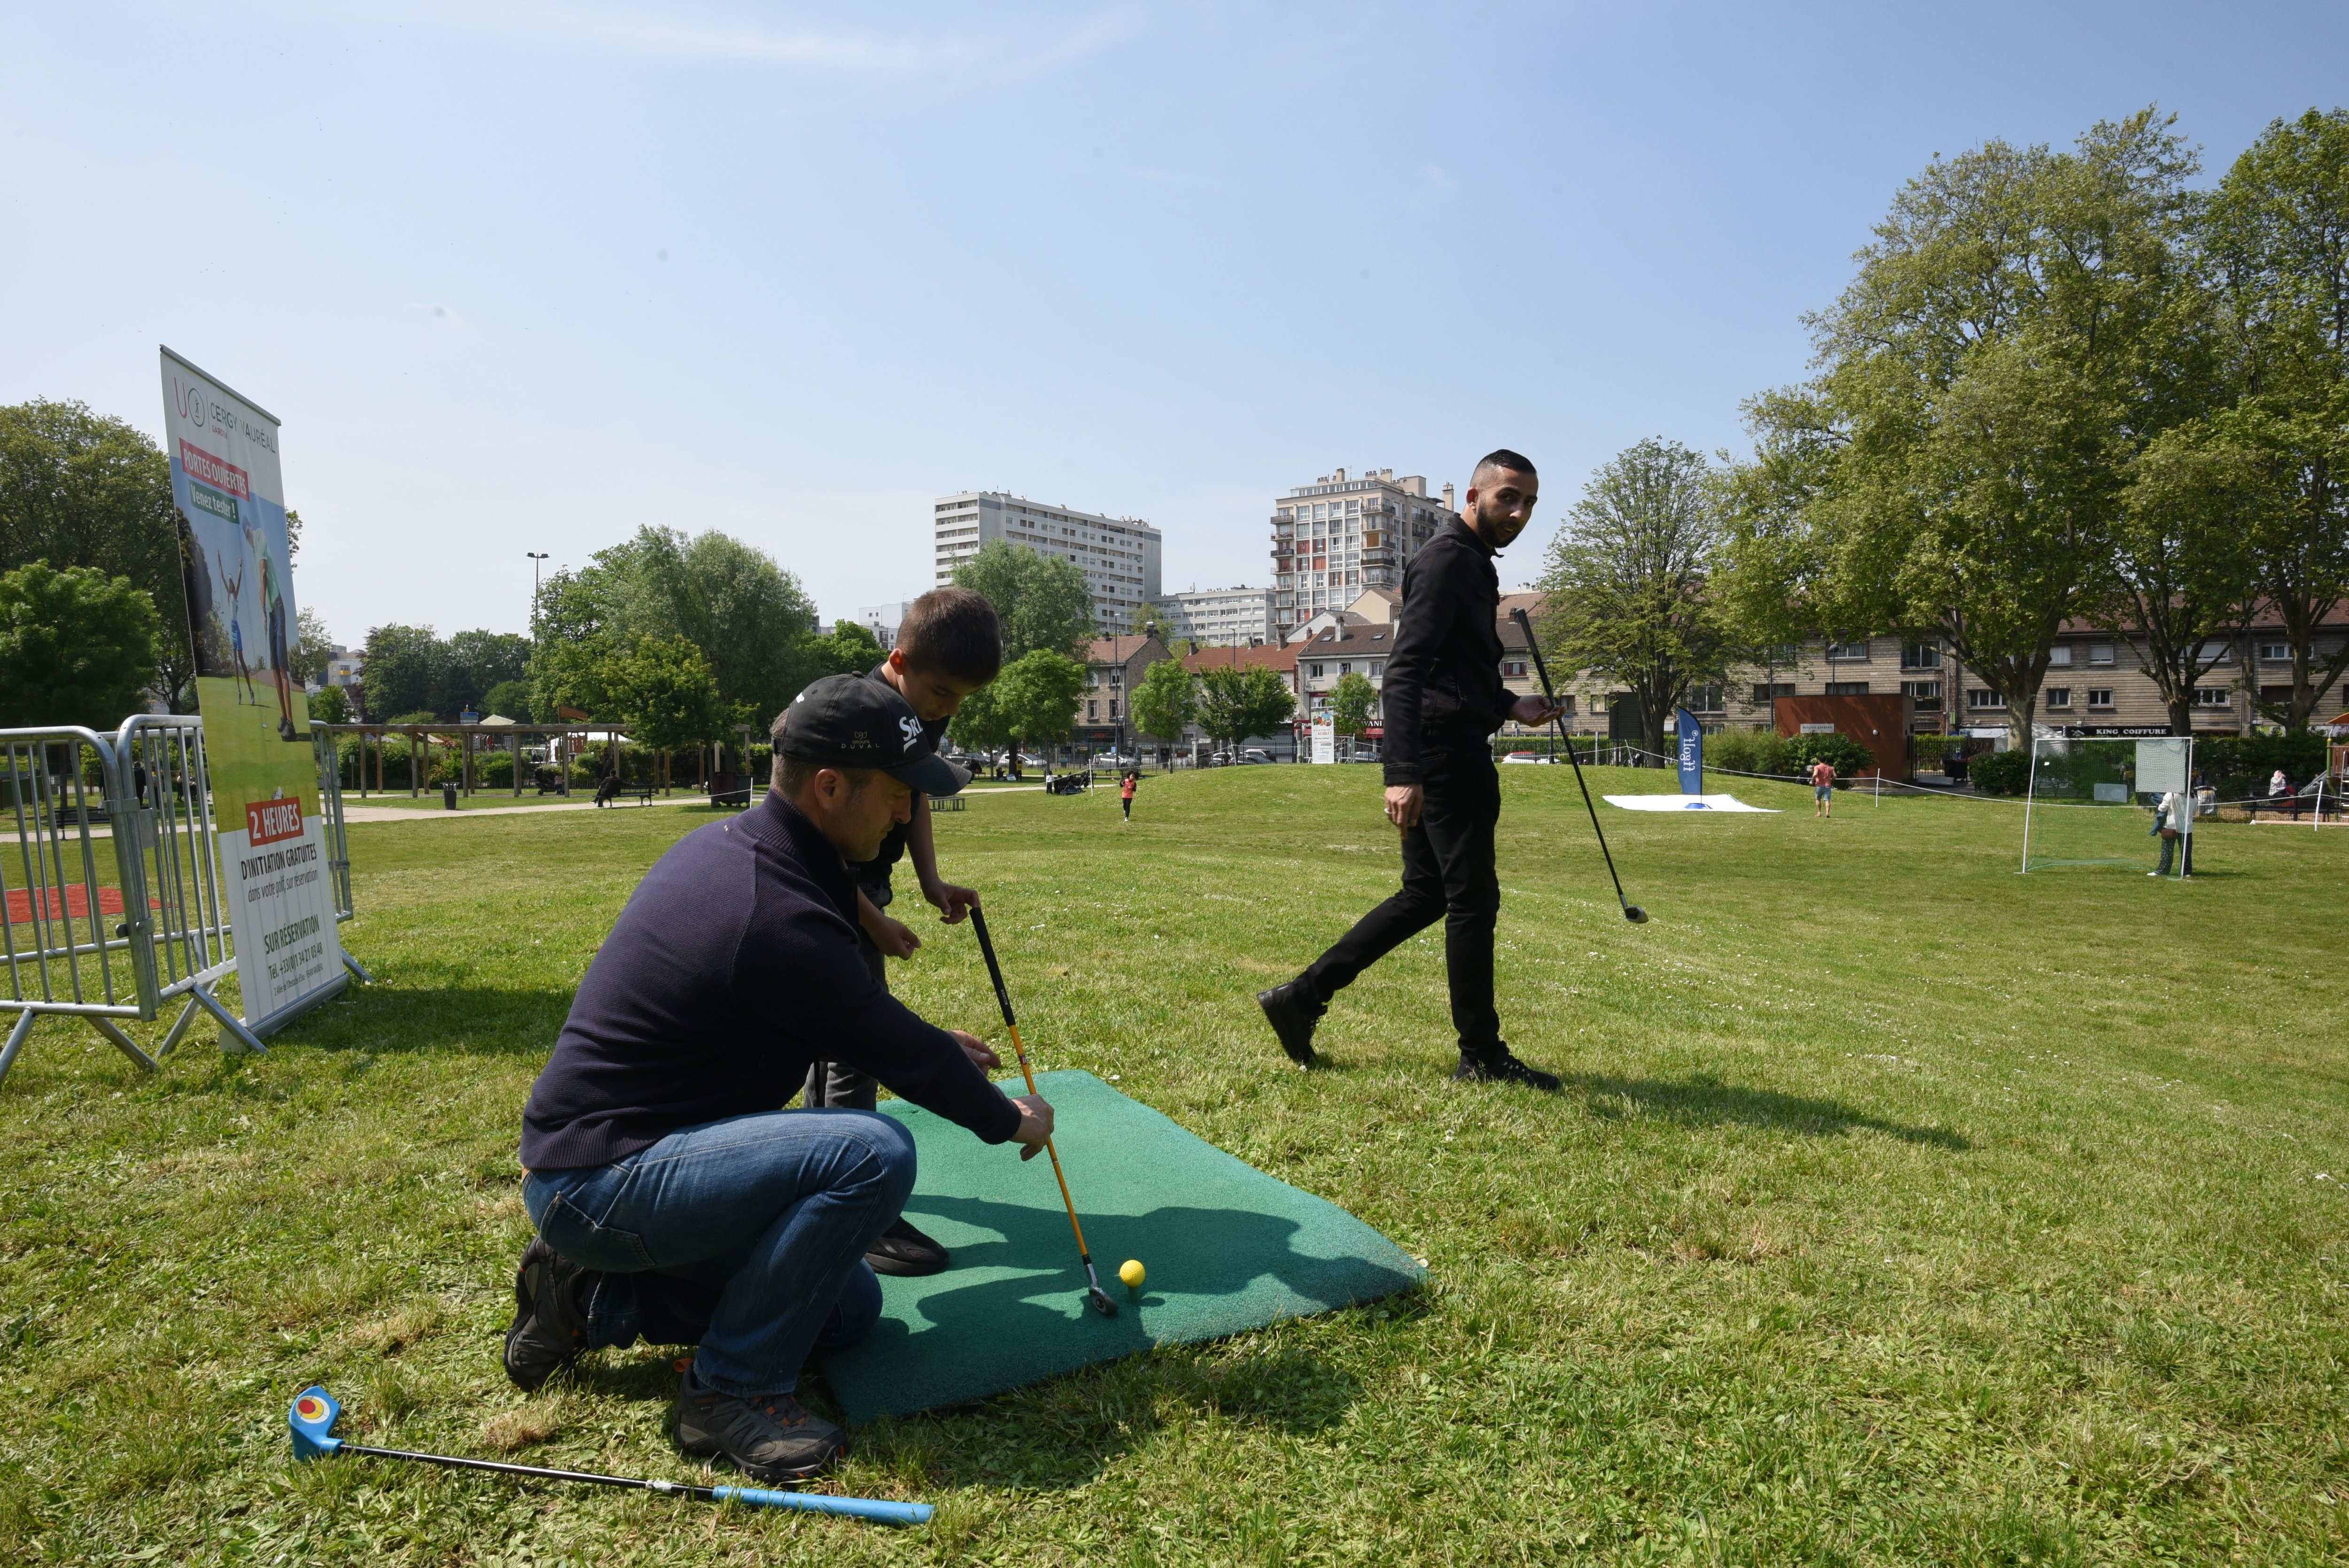 Argenteuil , le 14 mai. La ville a transformé le parc des Berges en parcours ludique de golf pour faire découvrir gratuitement ce sport à plusieurs centaines d'enfants et leurs parents. LP/Frédéric Naizot